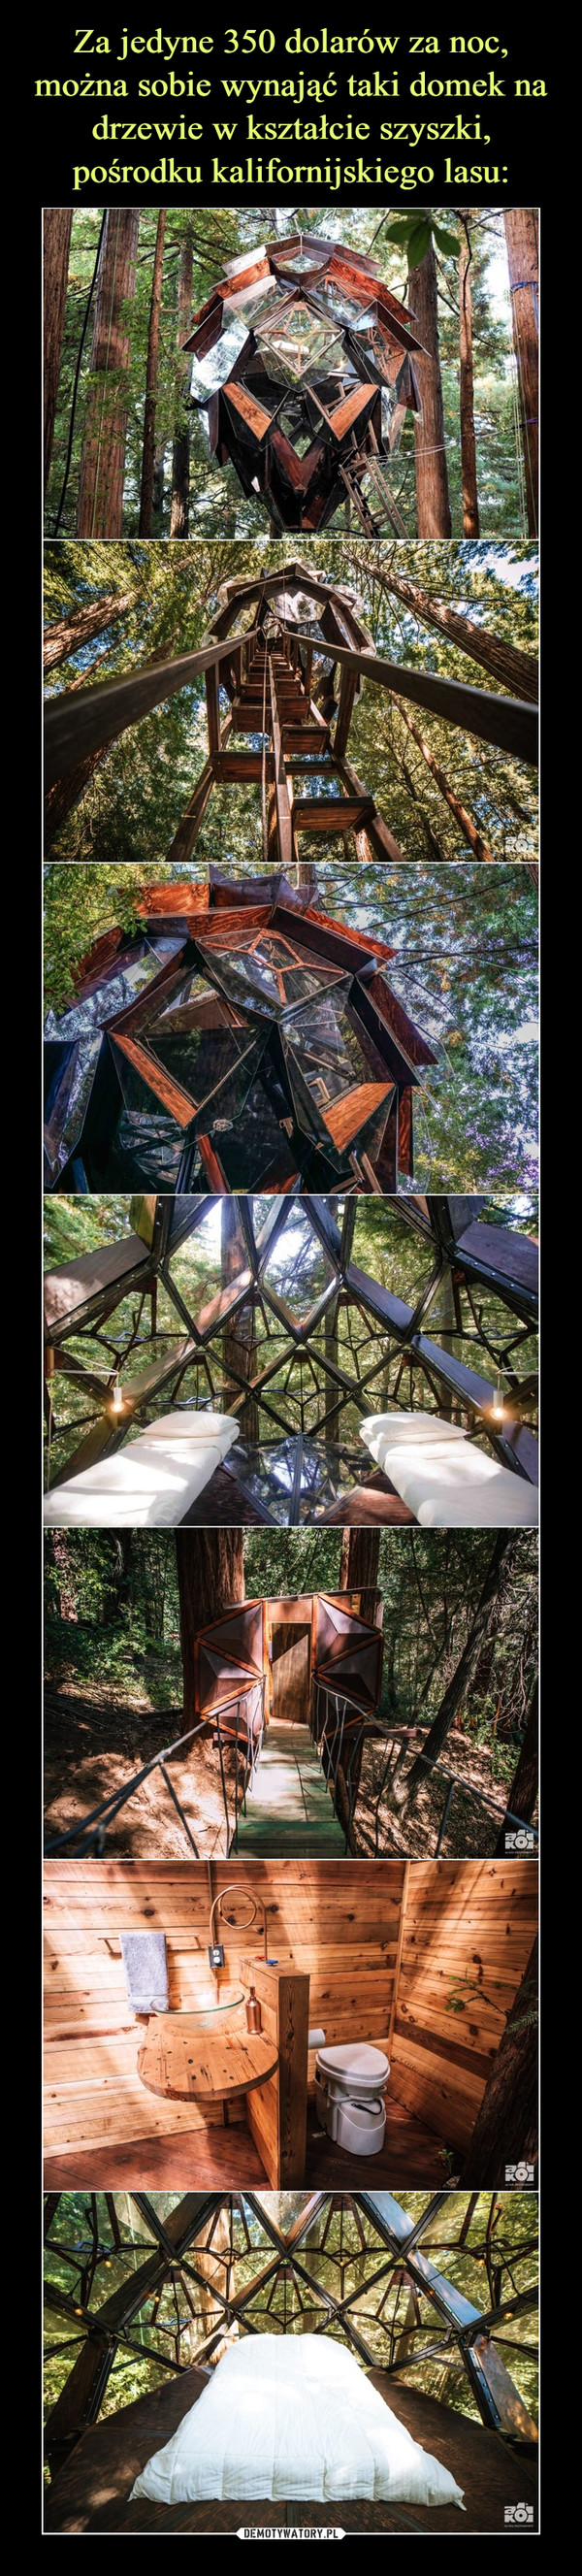 Za jedyne 350 dolarów za noc, można sobie wynająć taki domek na drzewie w kształcie szyszki, pośrodku kalifornijskiego lasu: